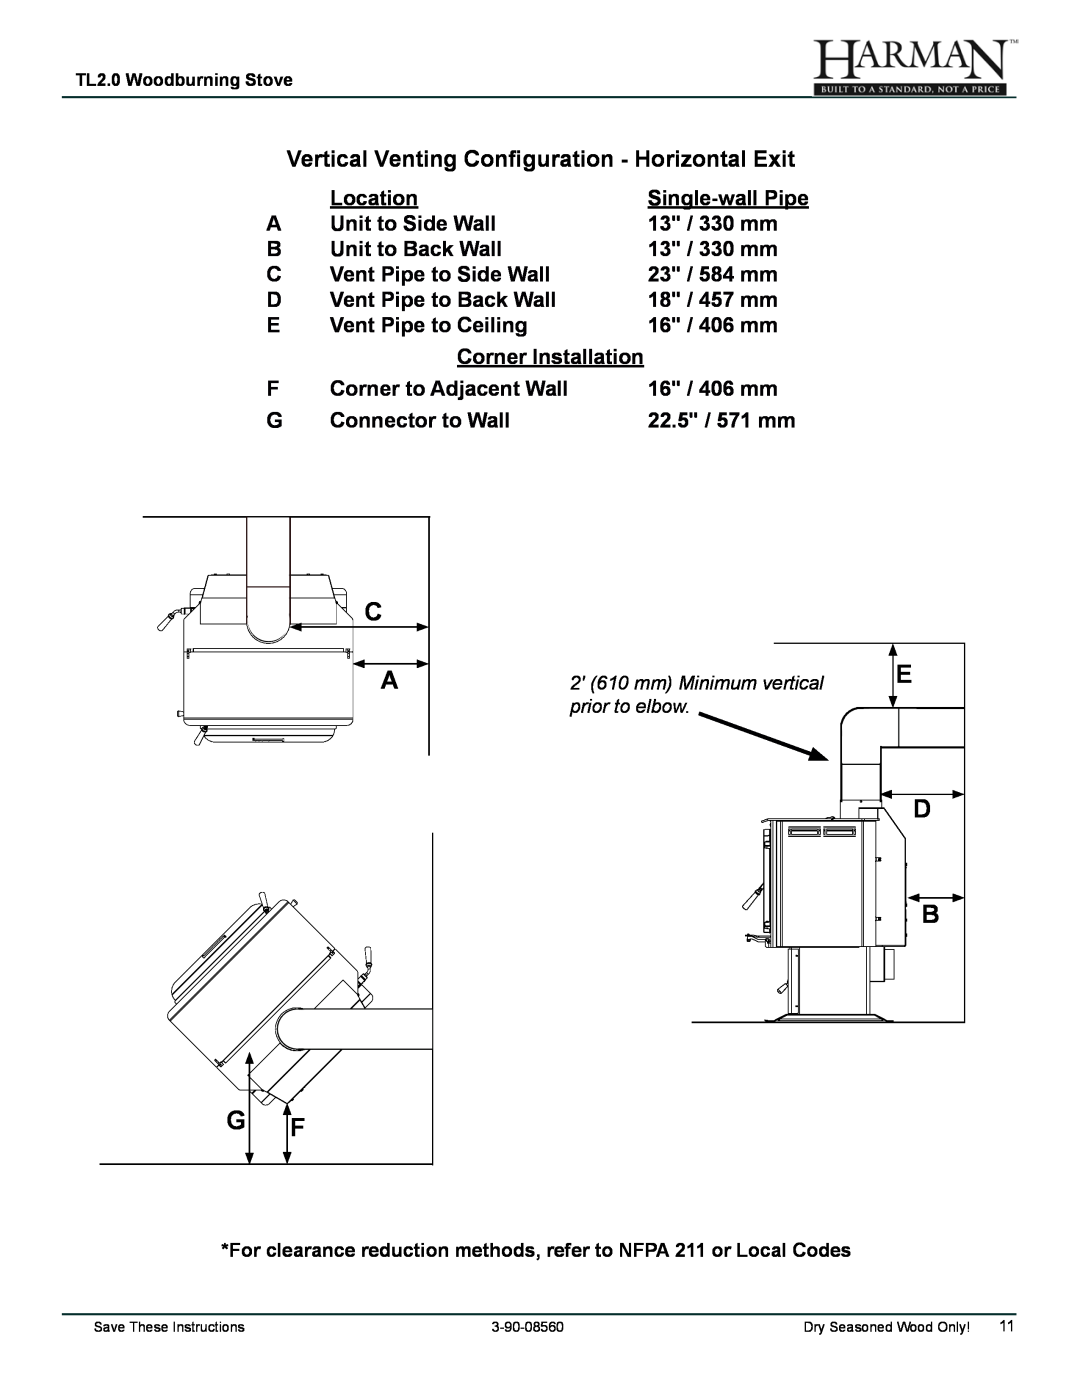 Harman Stove Company TL2.0 manual E D B, Vertical Venting Configuration - Horizontal Exit 